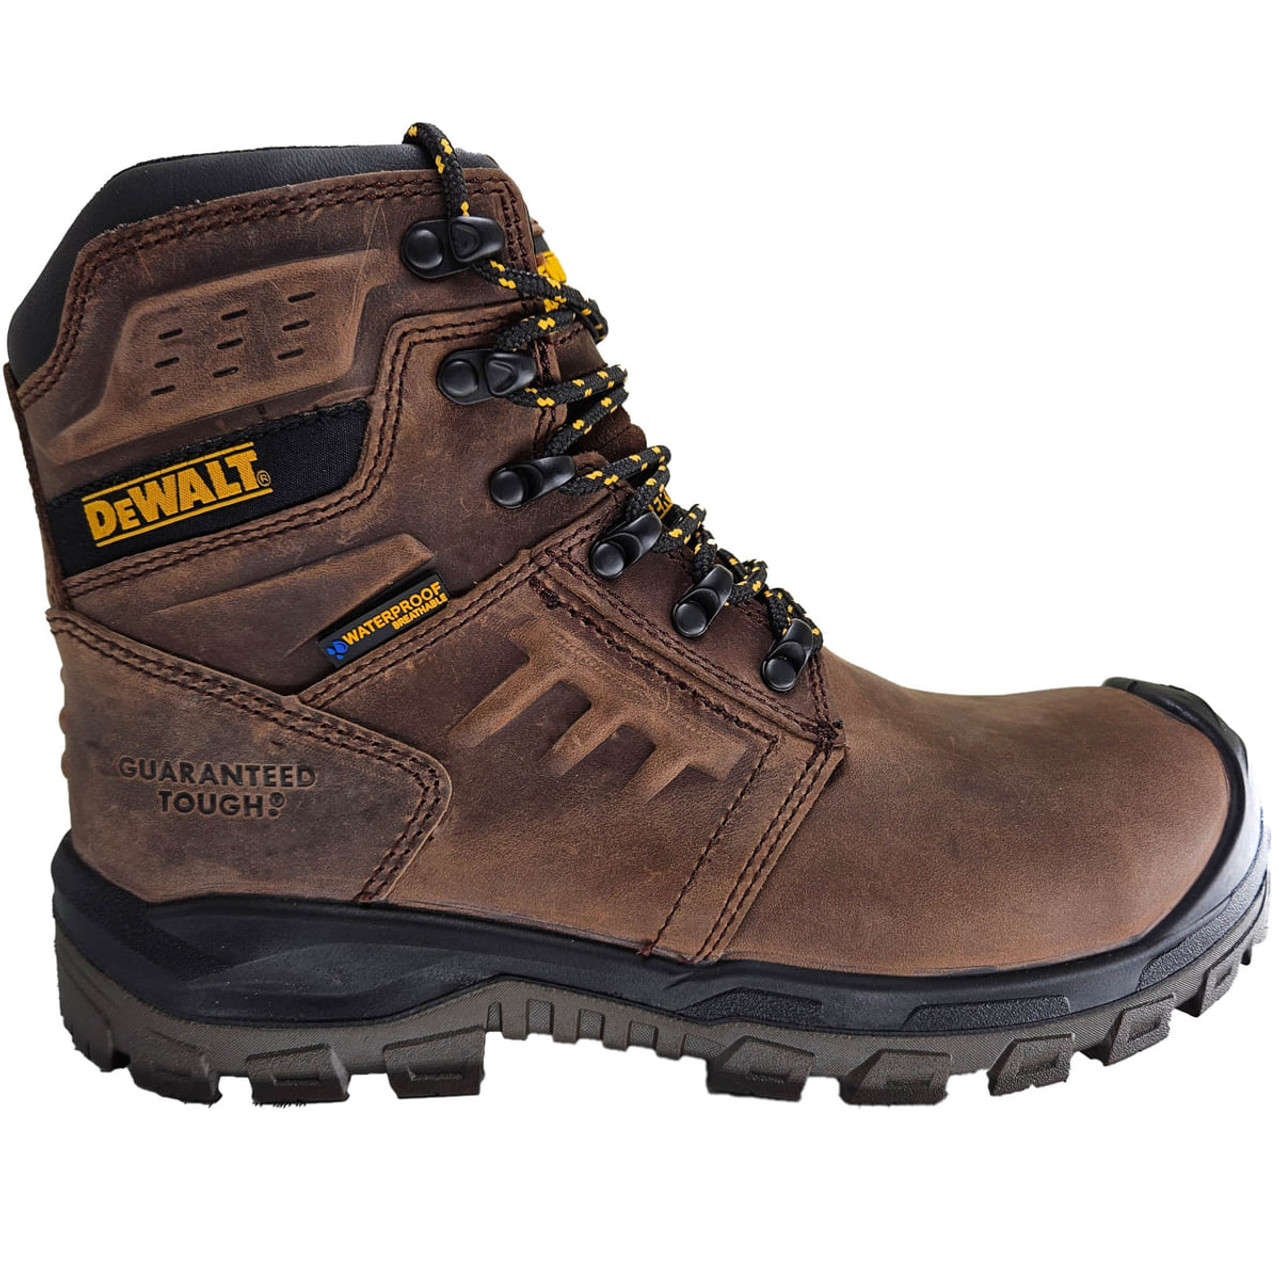 DeWalt Men's Salina Slip Resistant Composite Safety Toe Work Shoes